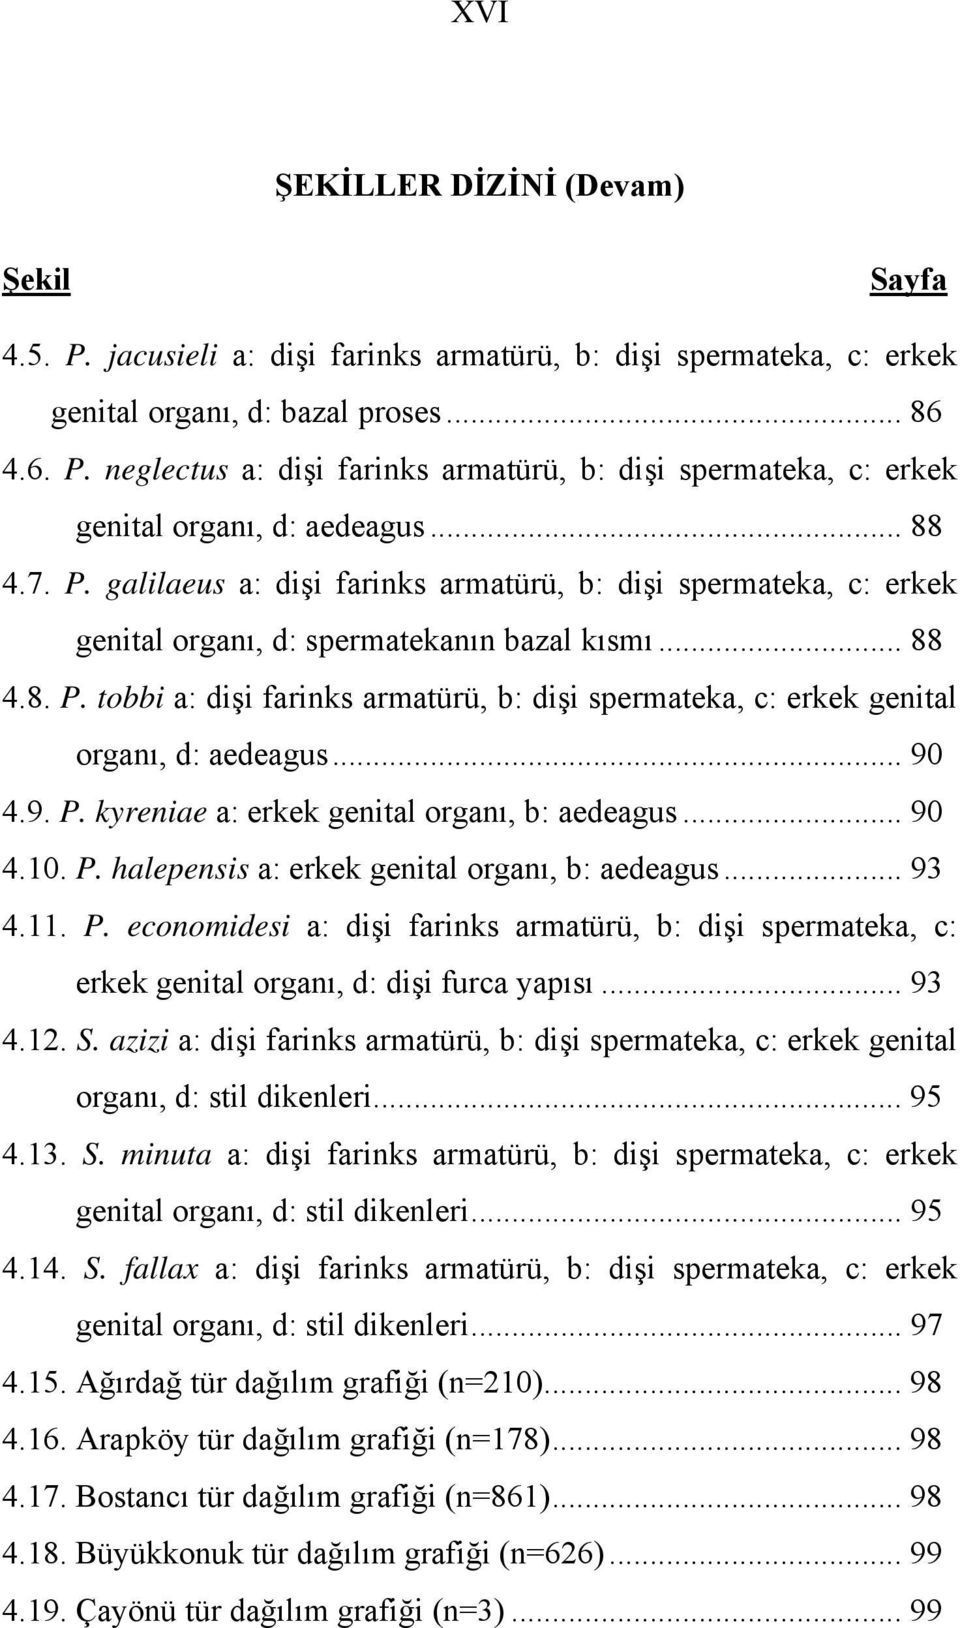 .. 90 4.9. P. kyreniae a: erkek genital organı, b: aedeagus... 90 4.10. P. halepensis a: erkek genital organı, b: aedeagus... 93 4.11. P. economidesi a: dişi farinks armatürü, b: dişi spermateka, c: erkek genital organı, d: dişi furca yapısı.